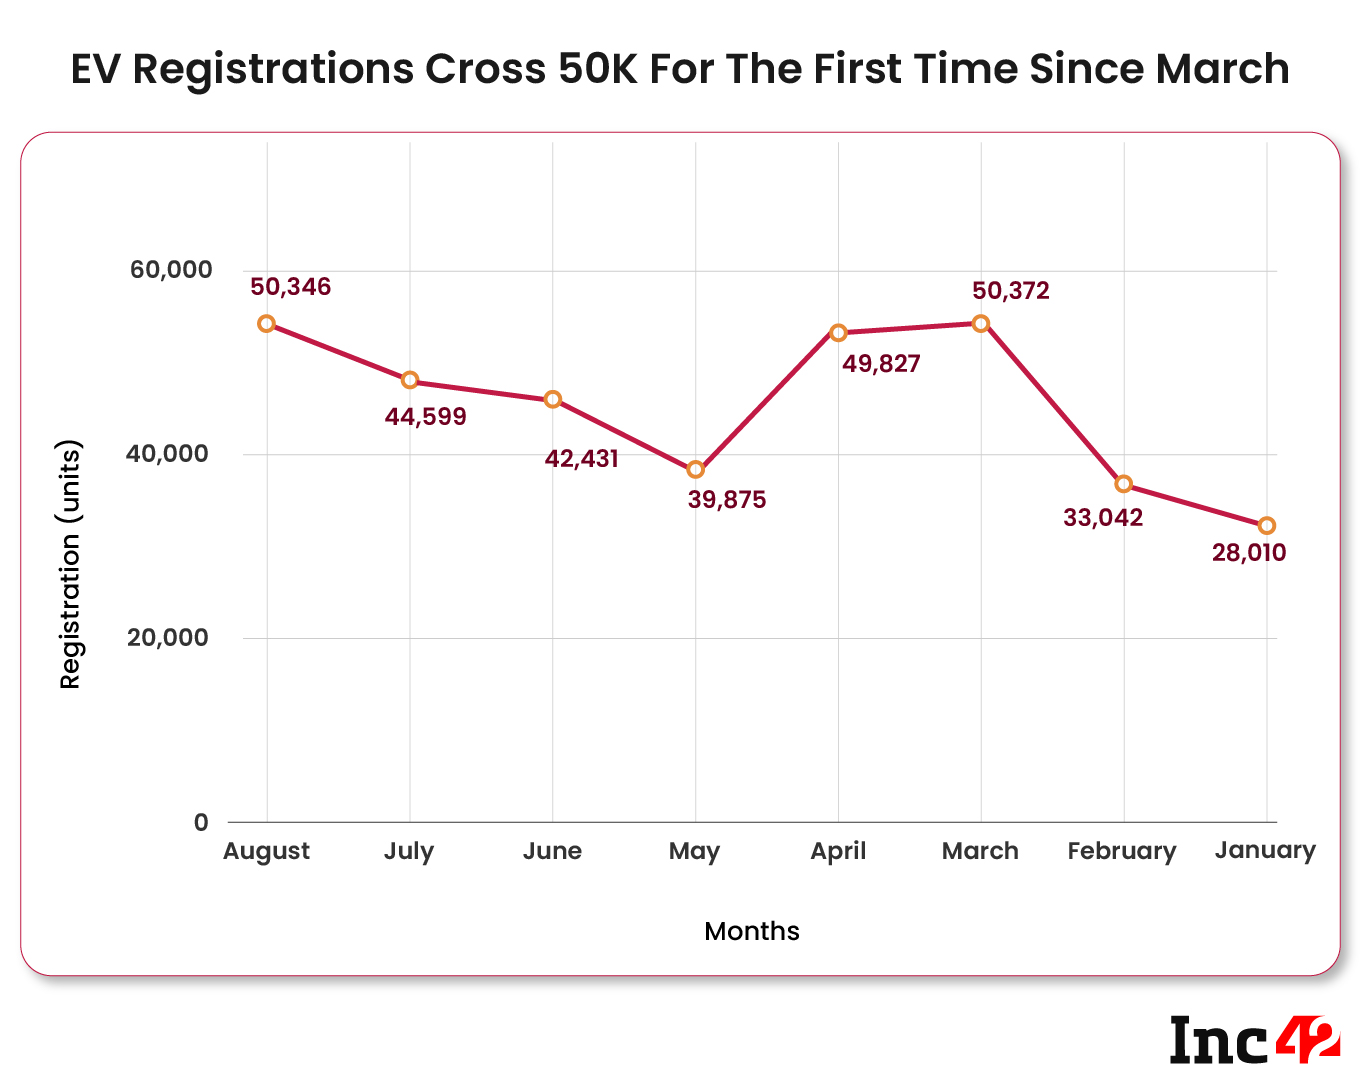 EV registrations cross 50k in August